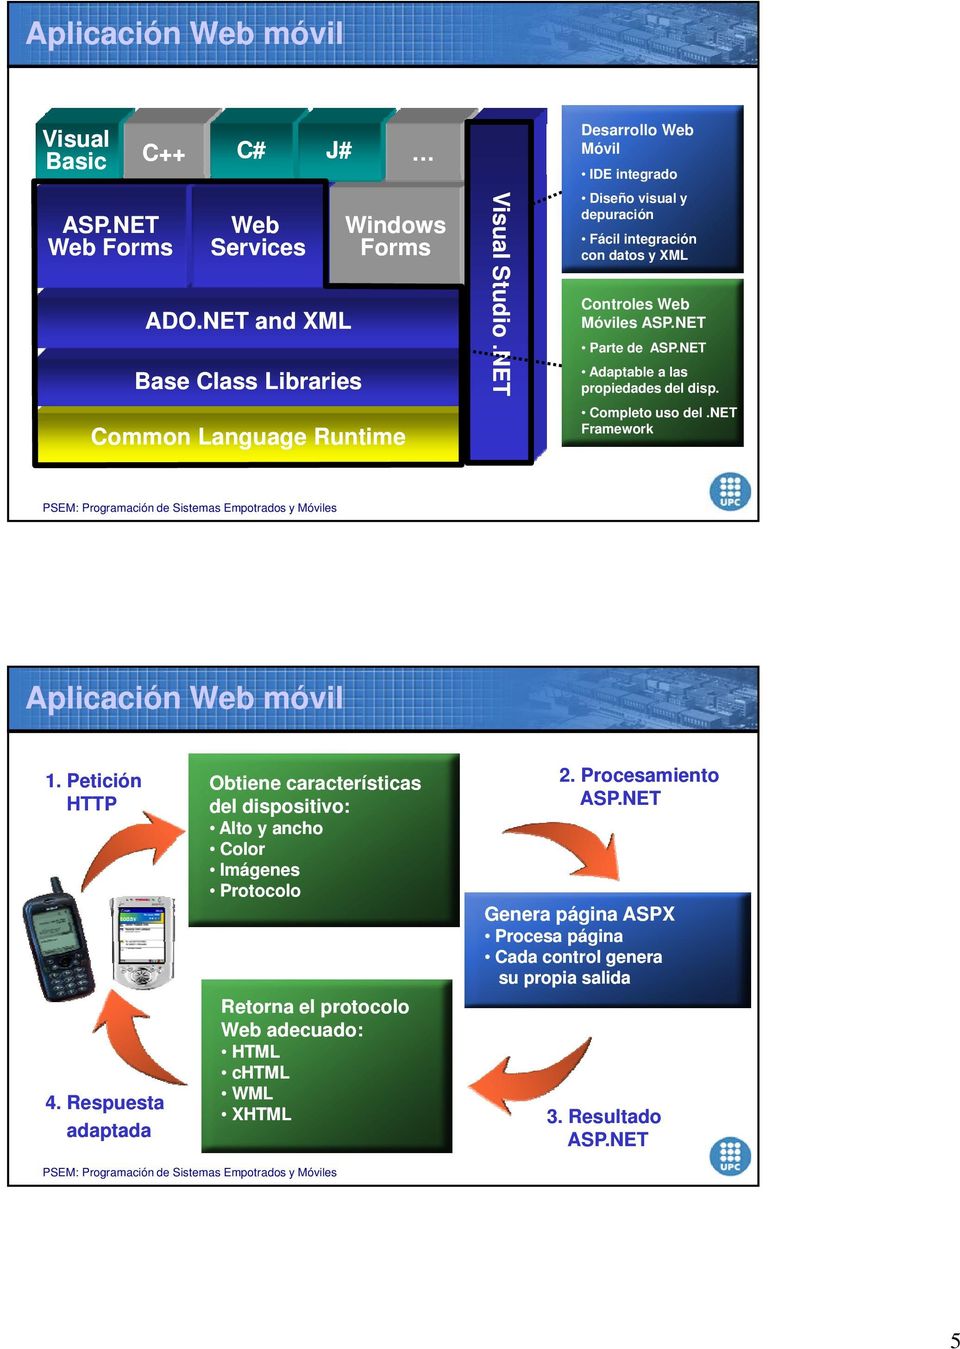 NET Adaptable a las propiedades del disp. Completo uso del.net Framework Aplicación Web móvil 1. Petición HTTP 4.